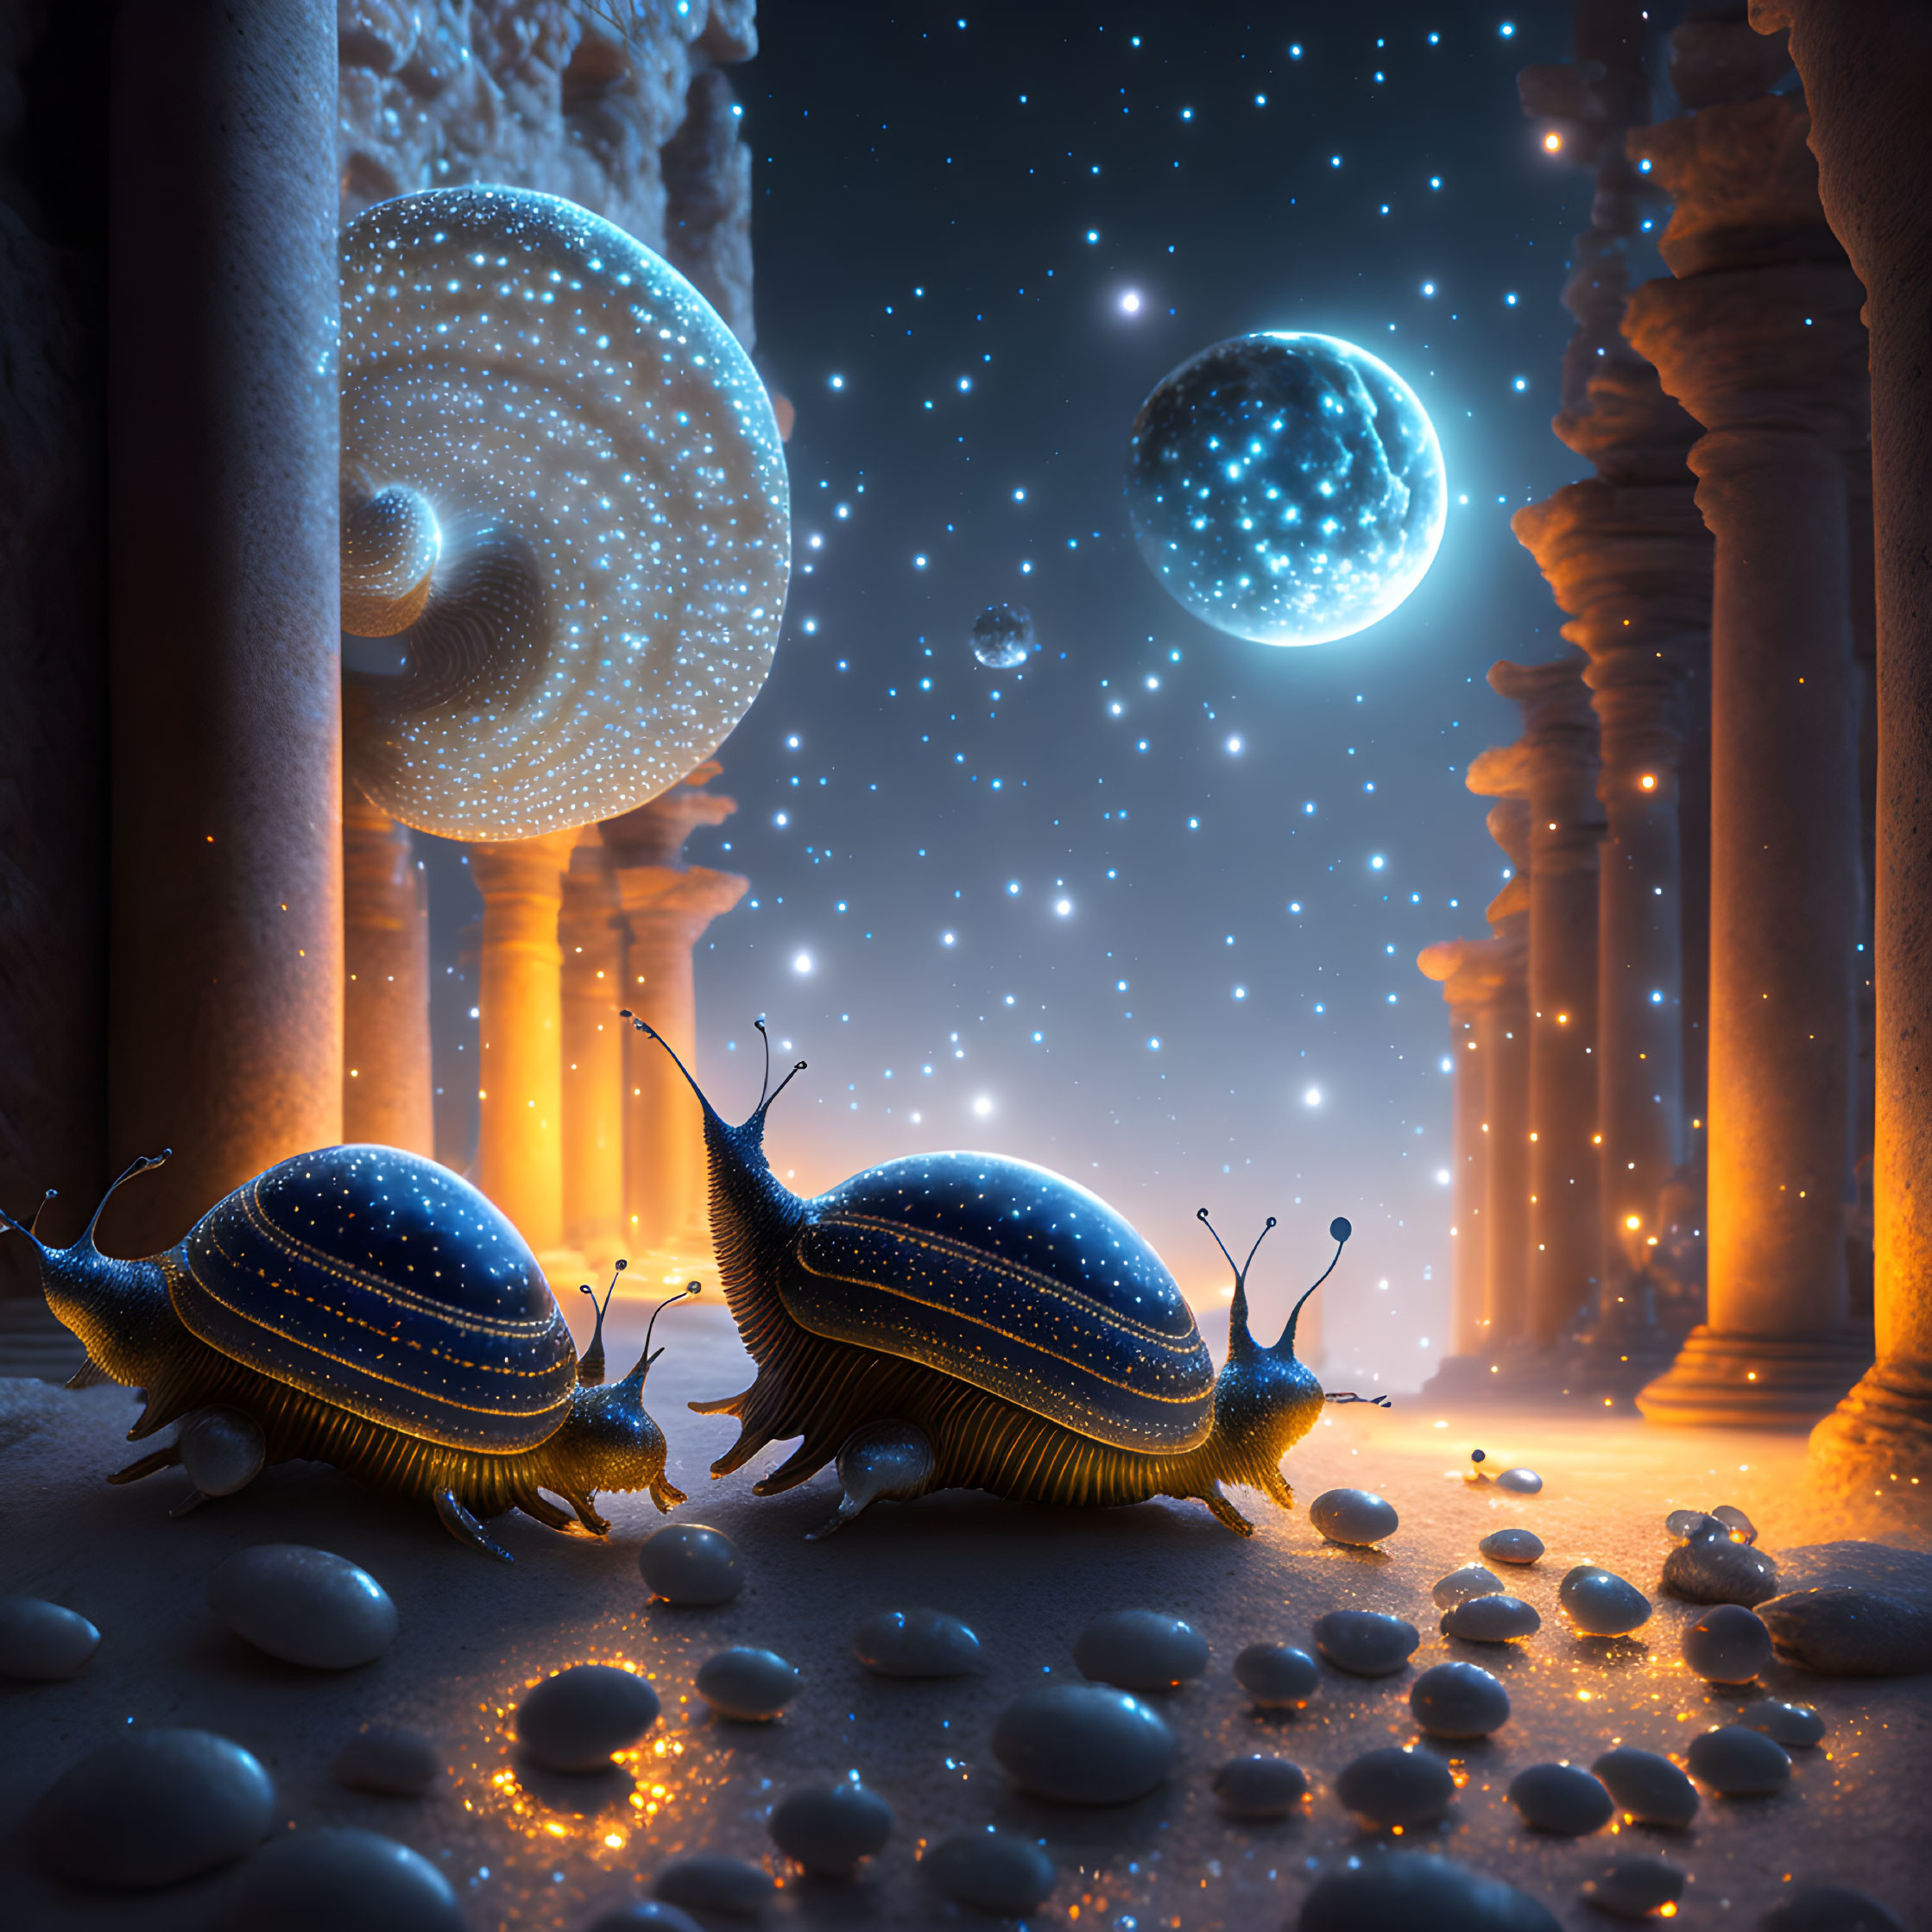 Alien Snails in Ancient Temple.